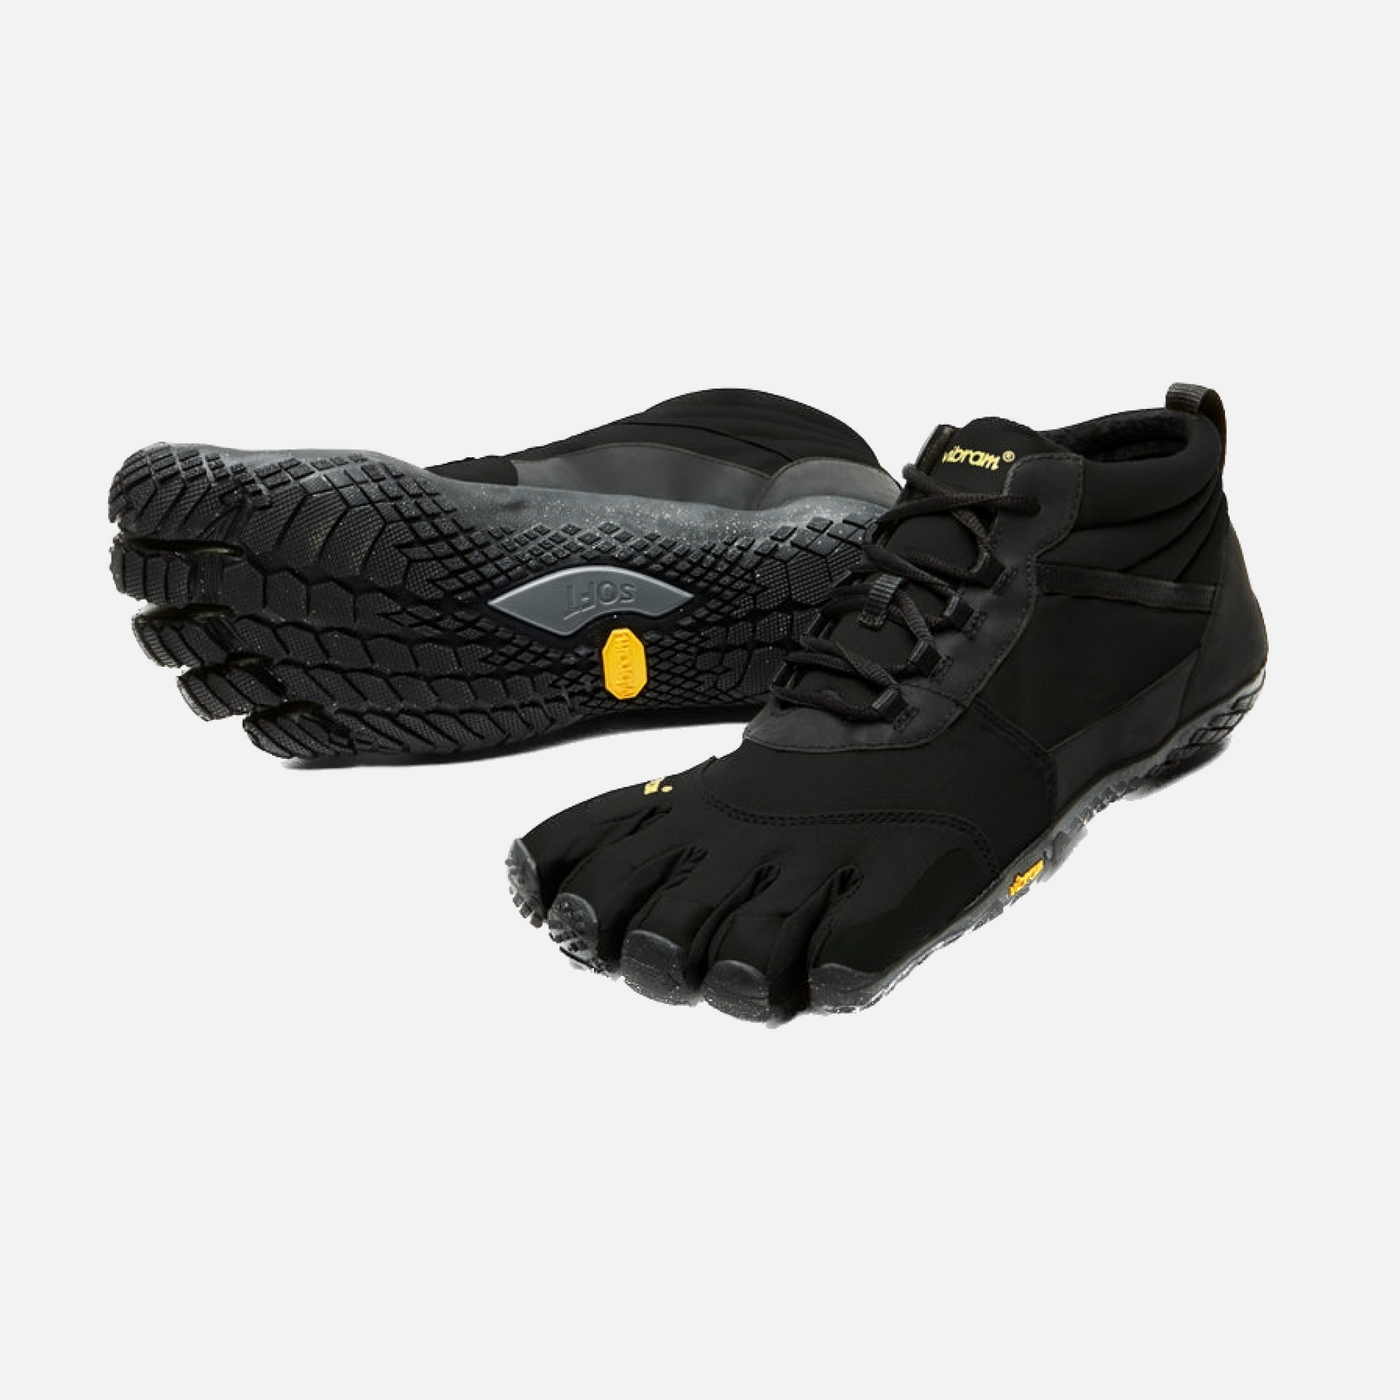 Vibram V-Trek Insulated Women's shoes - Black